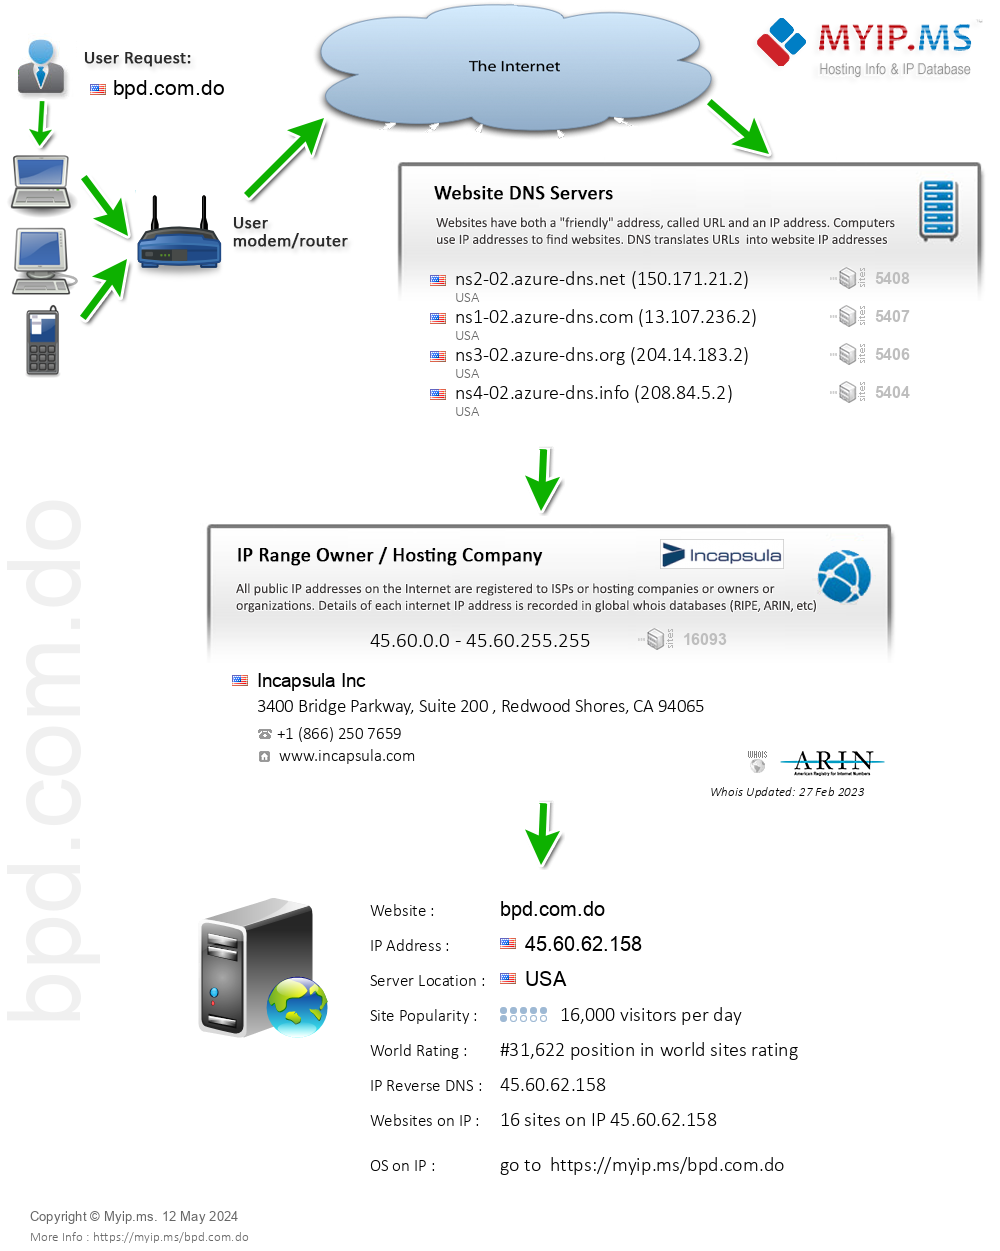 Bpd.com.do - Website Hosting Visual IP Diagram